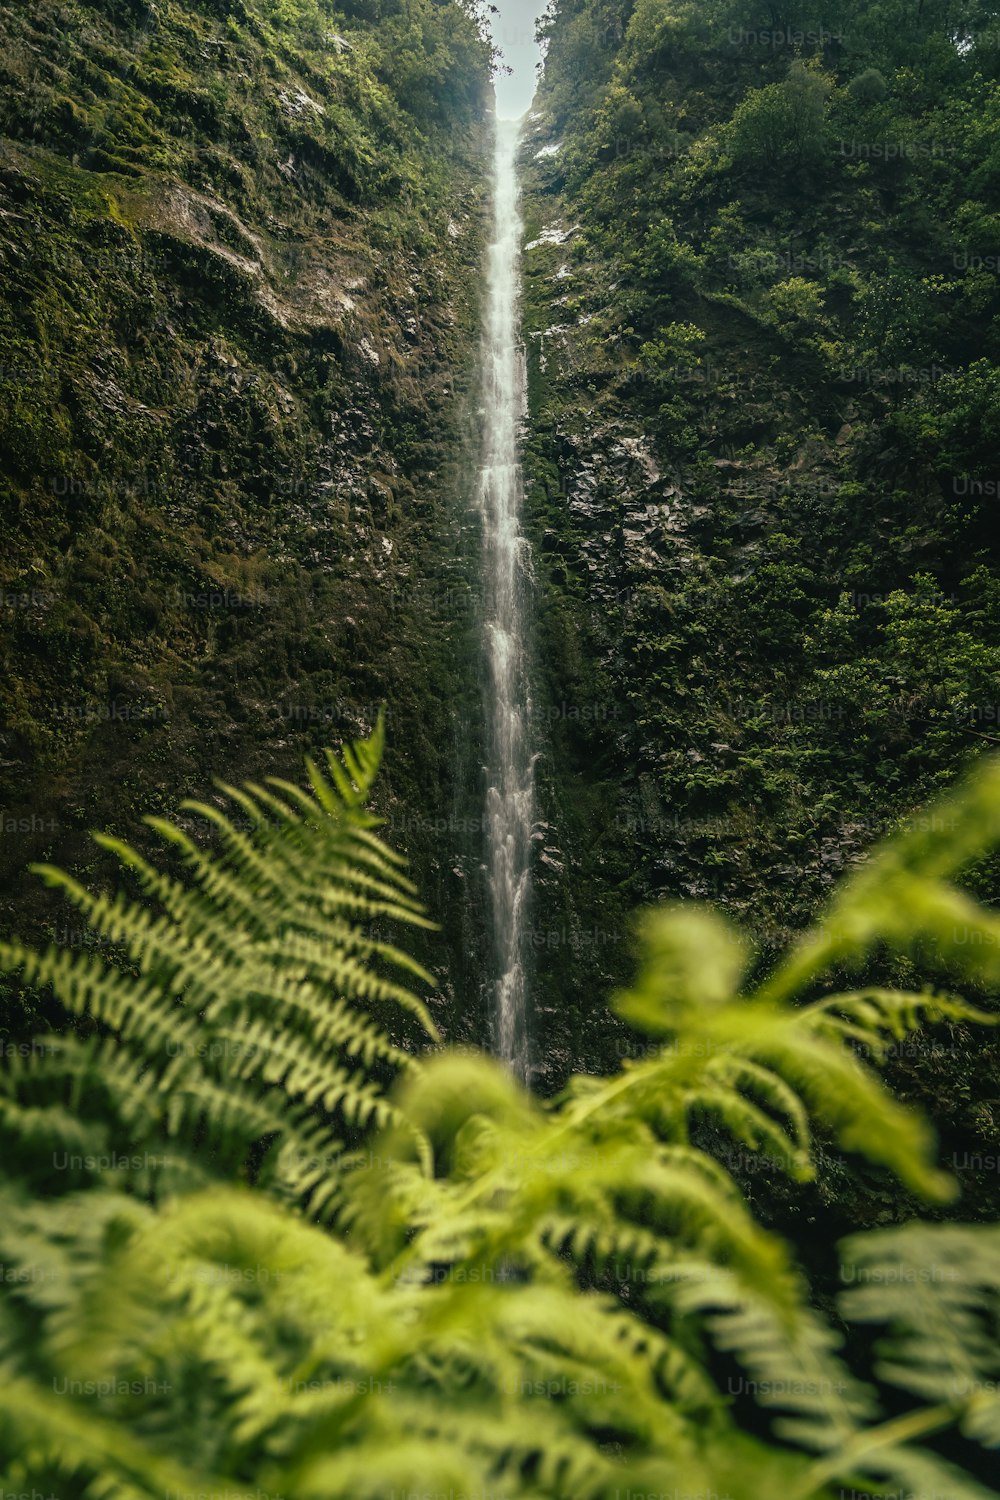 Un'alta cascata nel mezzo di una lussureggiante foresta verde